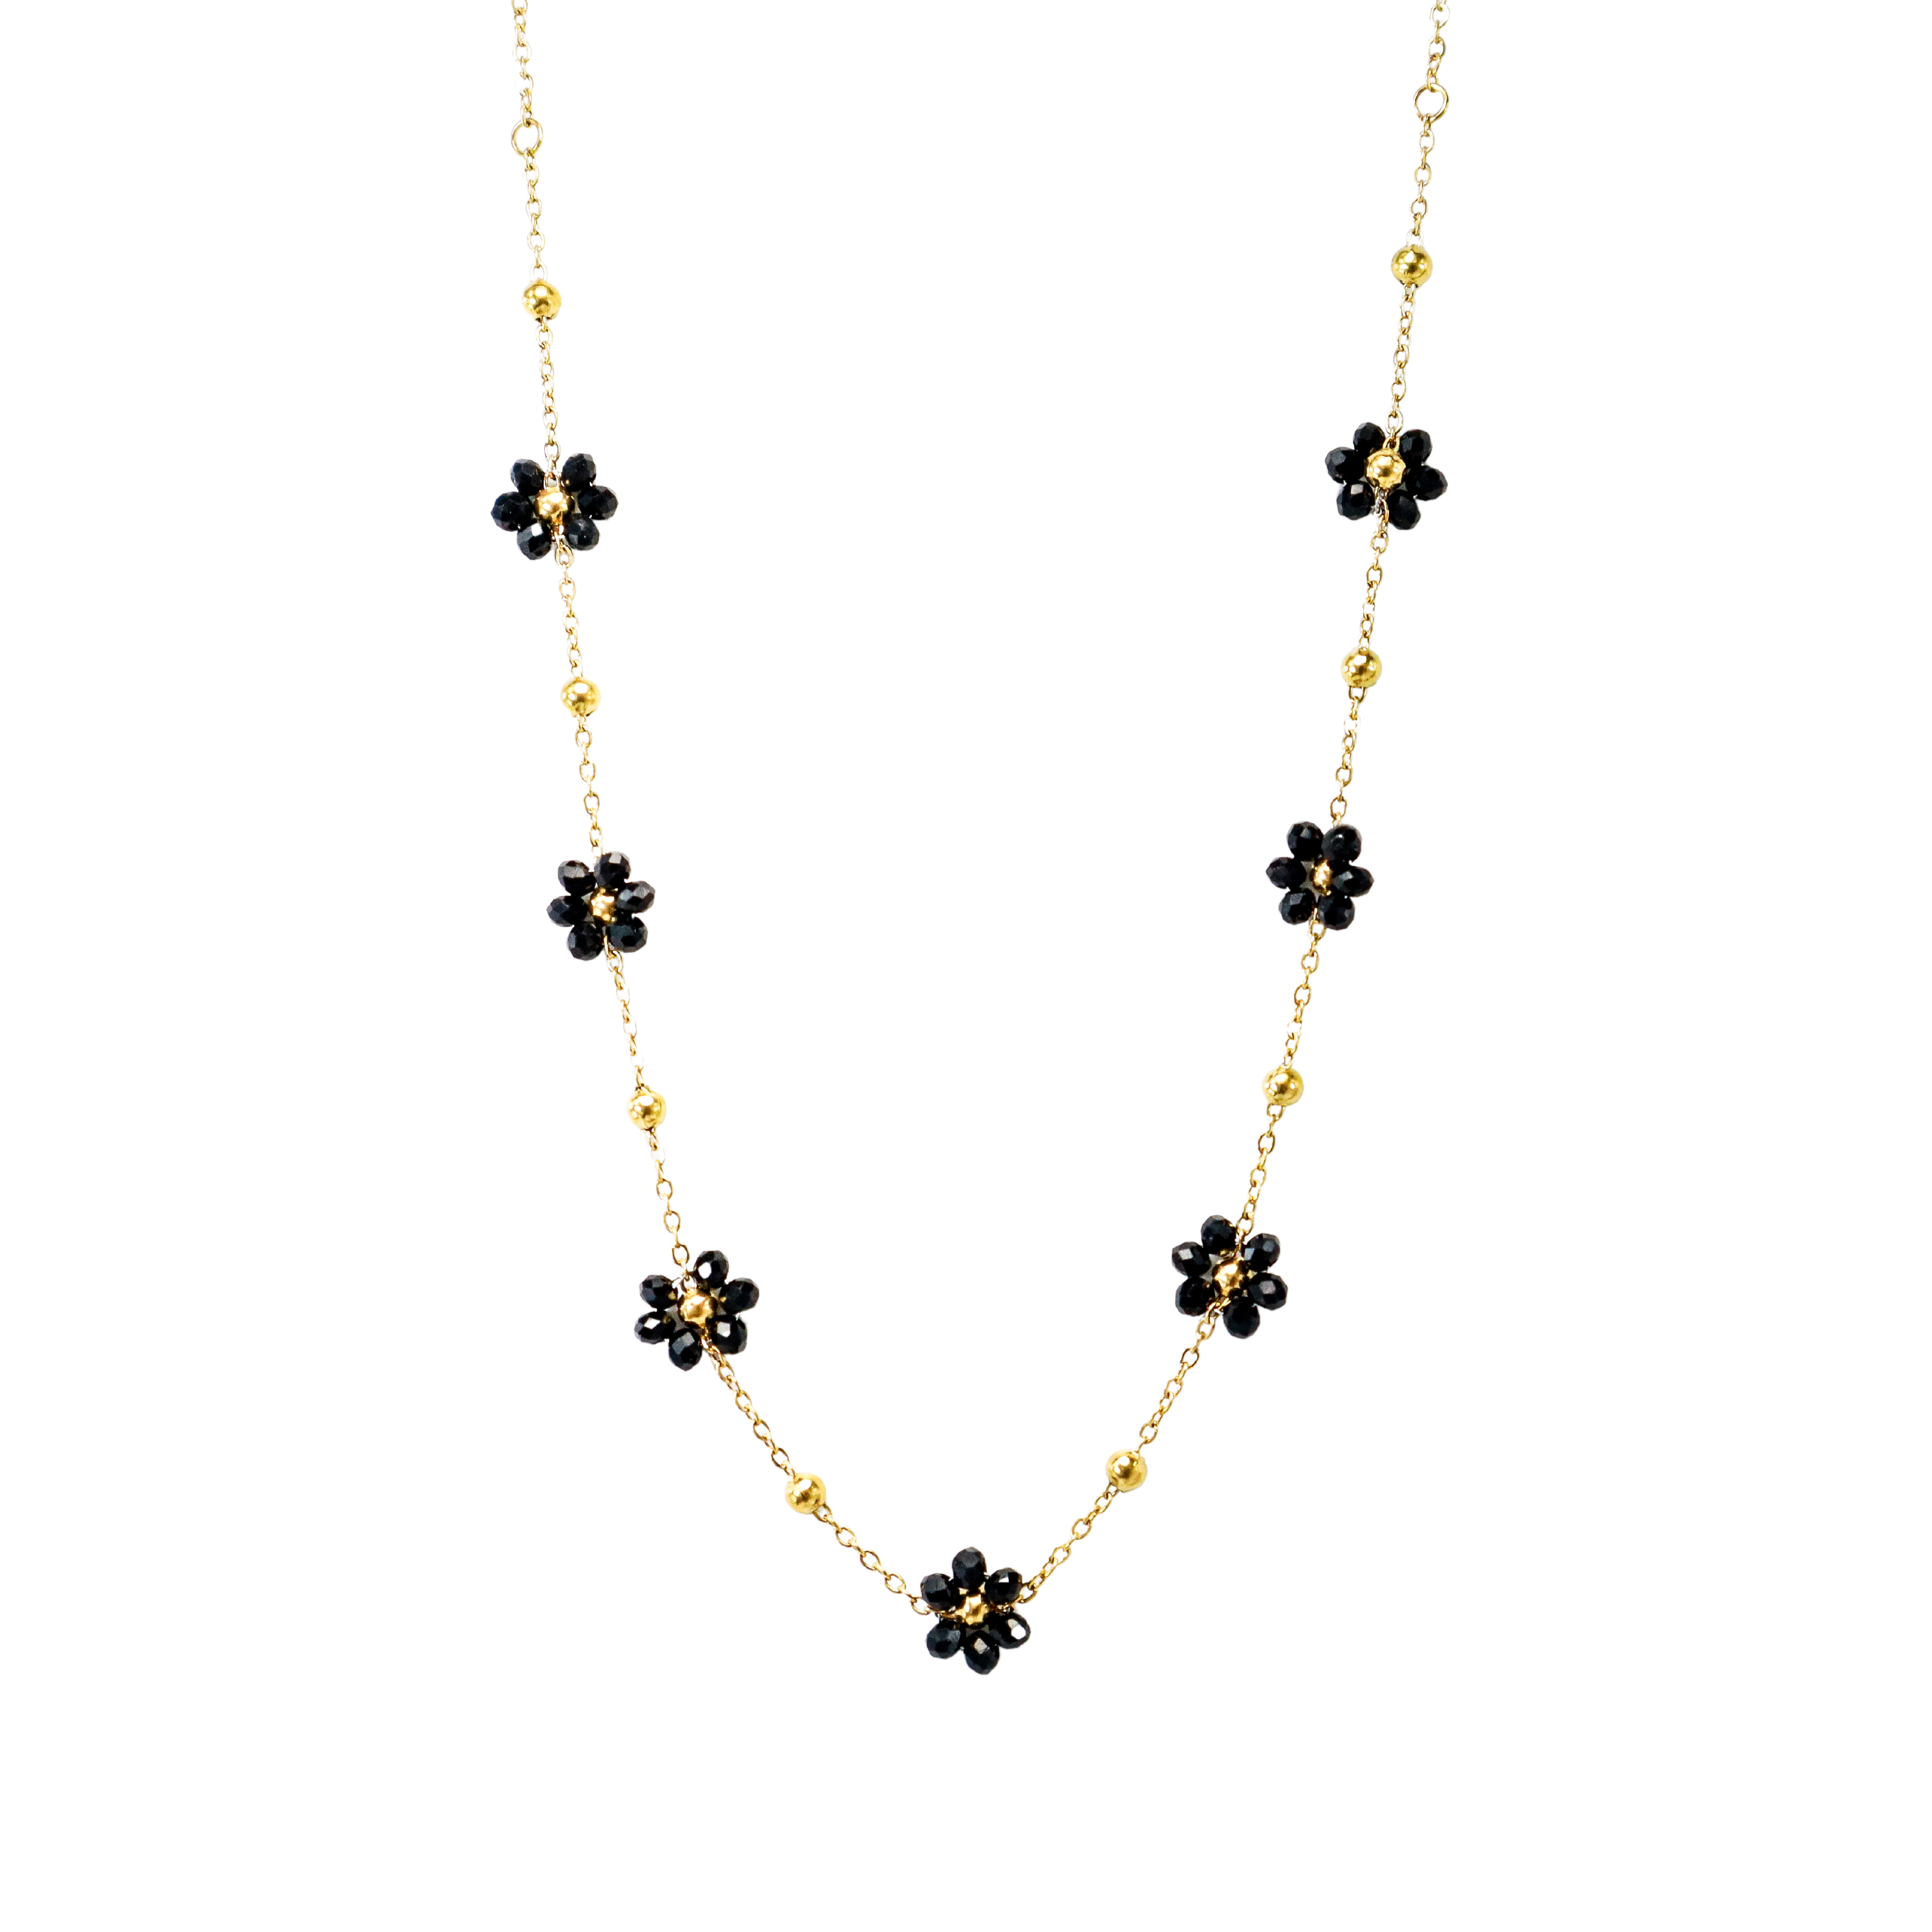 Black & Gold Crystal Flower Necklace